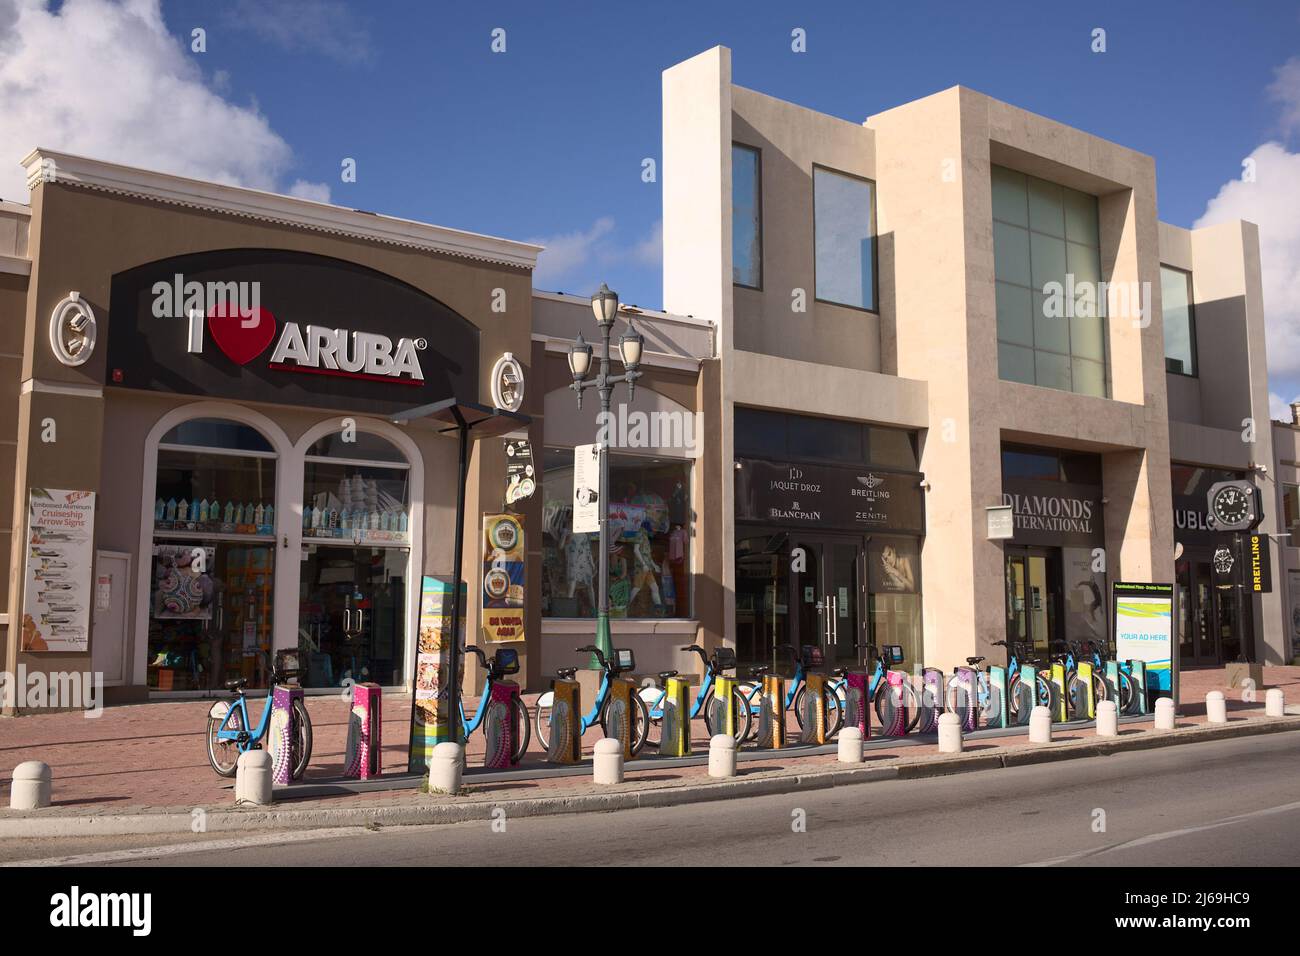 ORANJESTAD, ARUBA - 14 DÉCEMBRE 2020: Station de location de vélos verts, I Love Aruba souvenir Shop et Diamonds International Jewellery store sur Aruba Banque D'Images